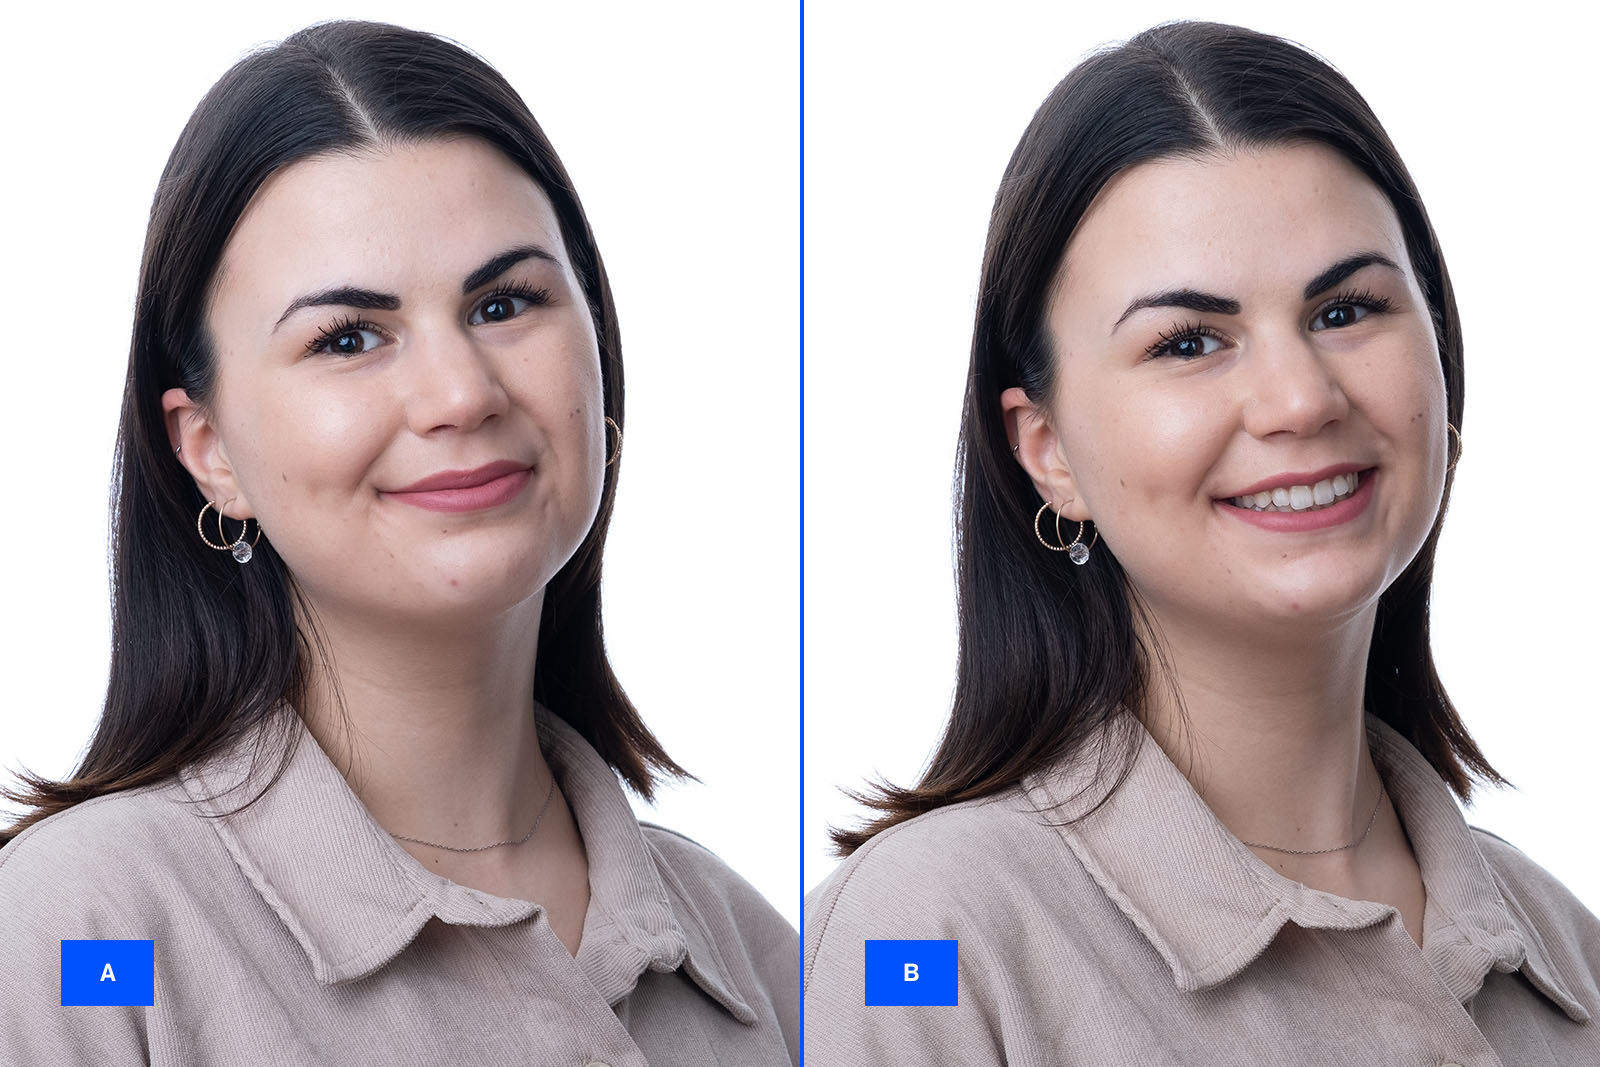 Vergleichsbild einer jungen Frau, links sieht ihr Lächeln etwas angespannt aus, rechts sieht man ein entspannt authentisches Lächeln, das die Zähne zeigt